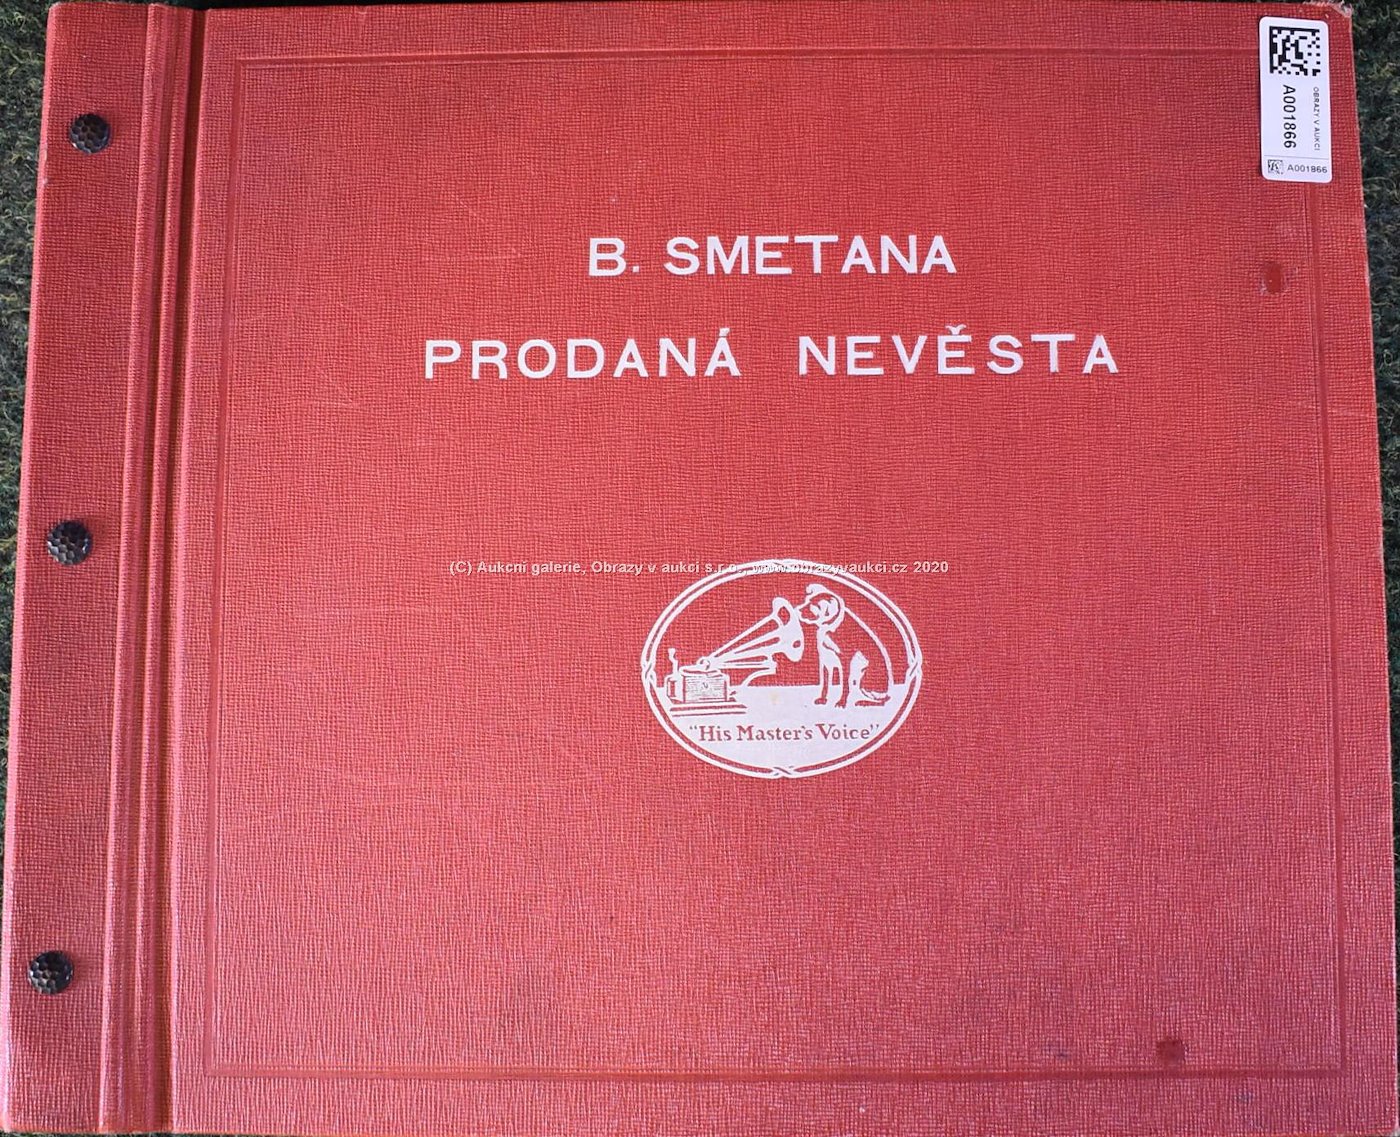 Bedřich Smetana - Soubor 15 gramofonových desek - Prodaná nevěsta